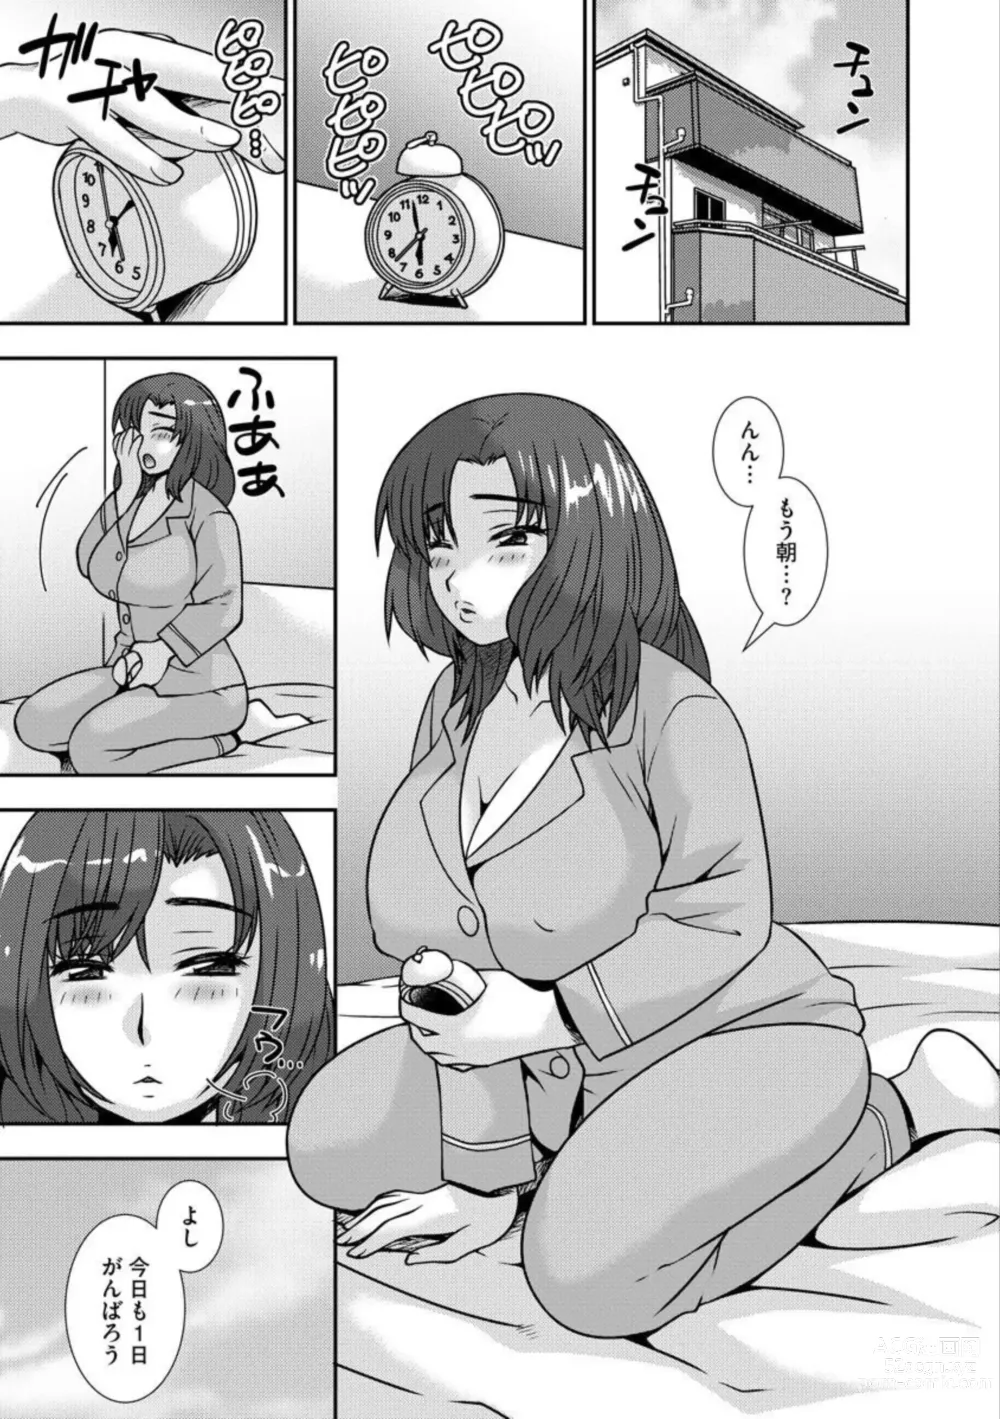 Page 4 of manga Netori Haha Musume no Kareshi no Are ga Wasurerarenakute 1